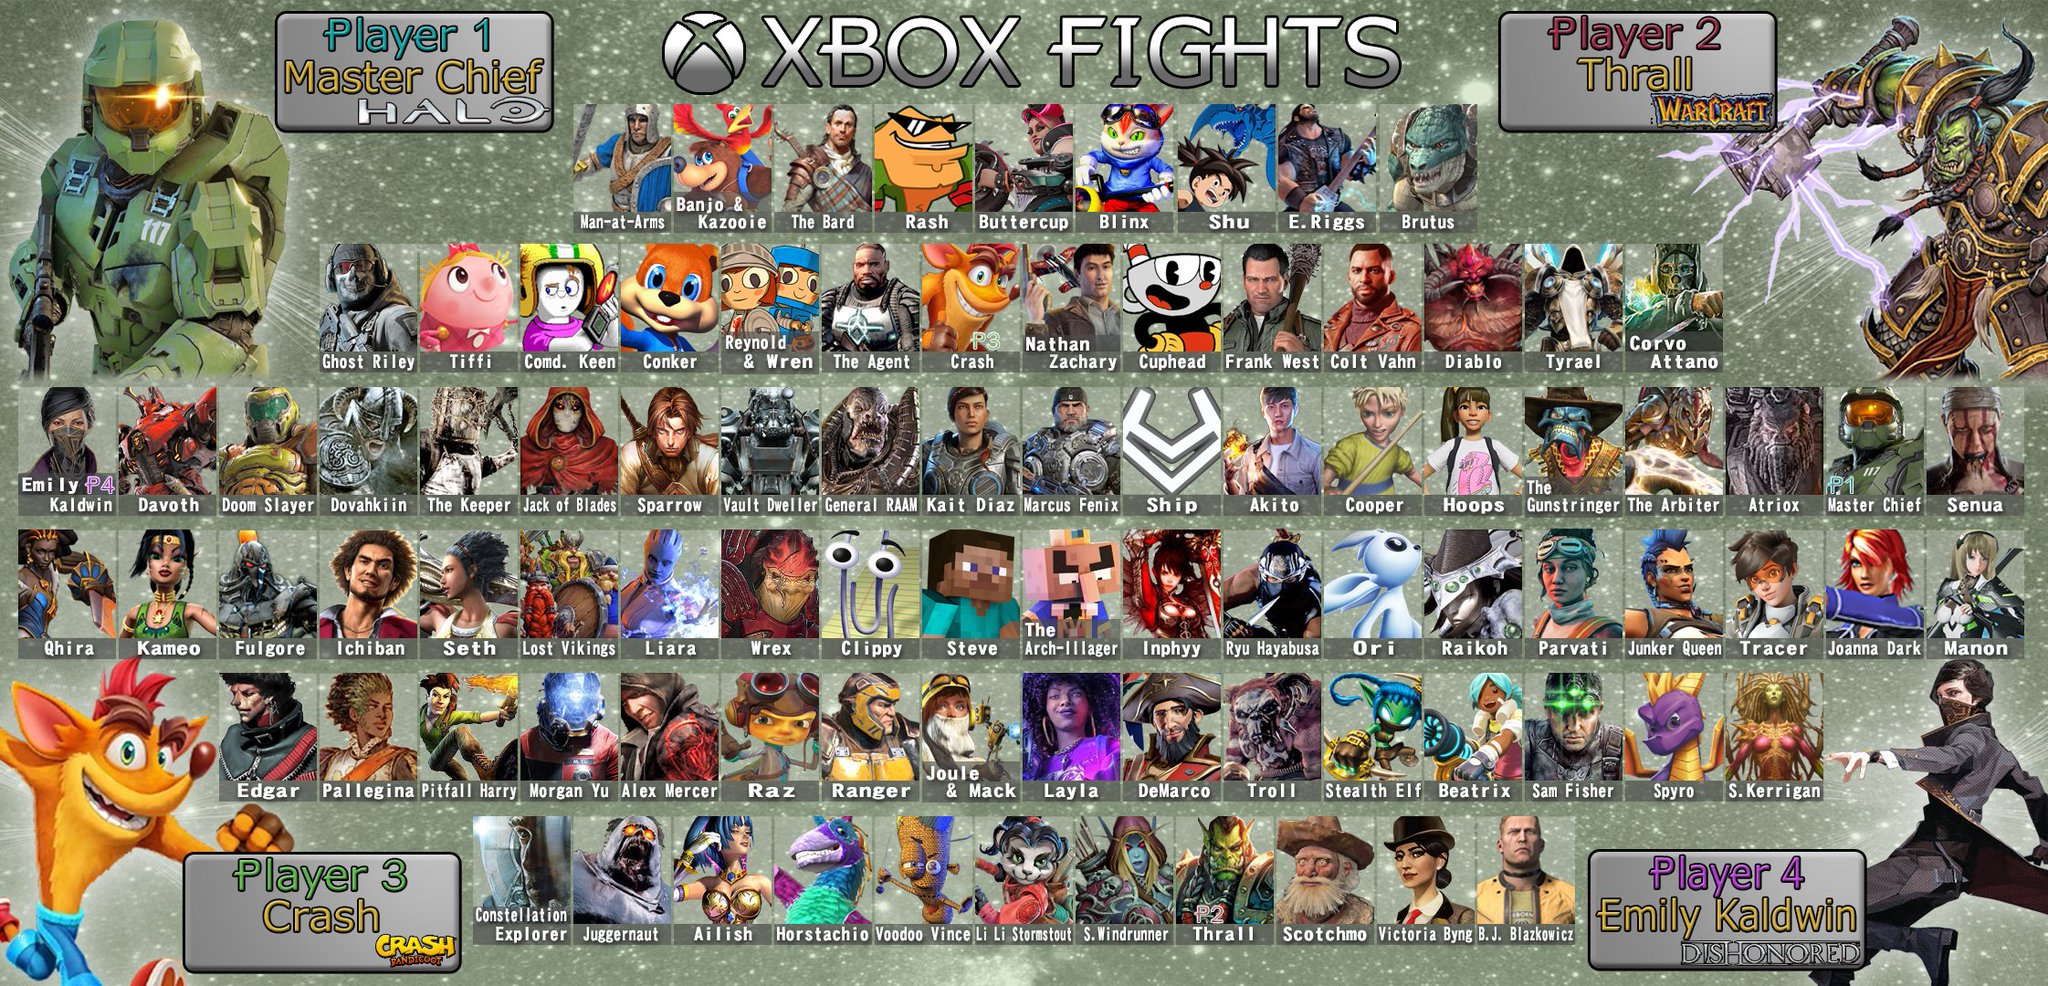 Концепт: показали потенциальный файтинг Xbox - 90 персонажей и 27 локаций